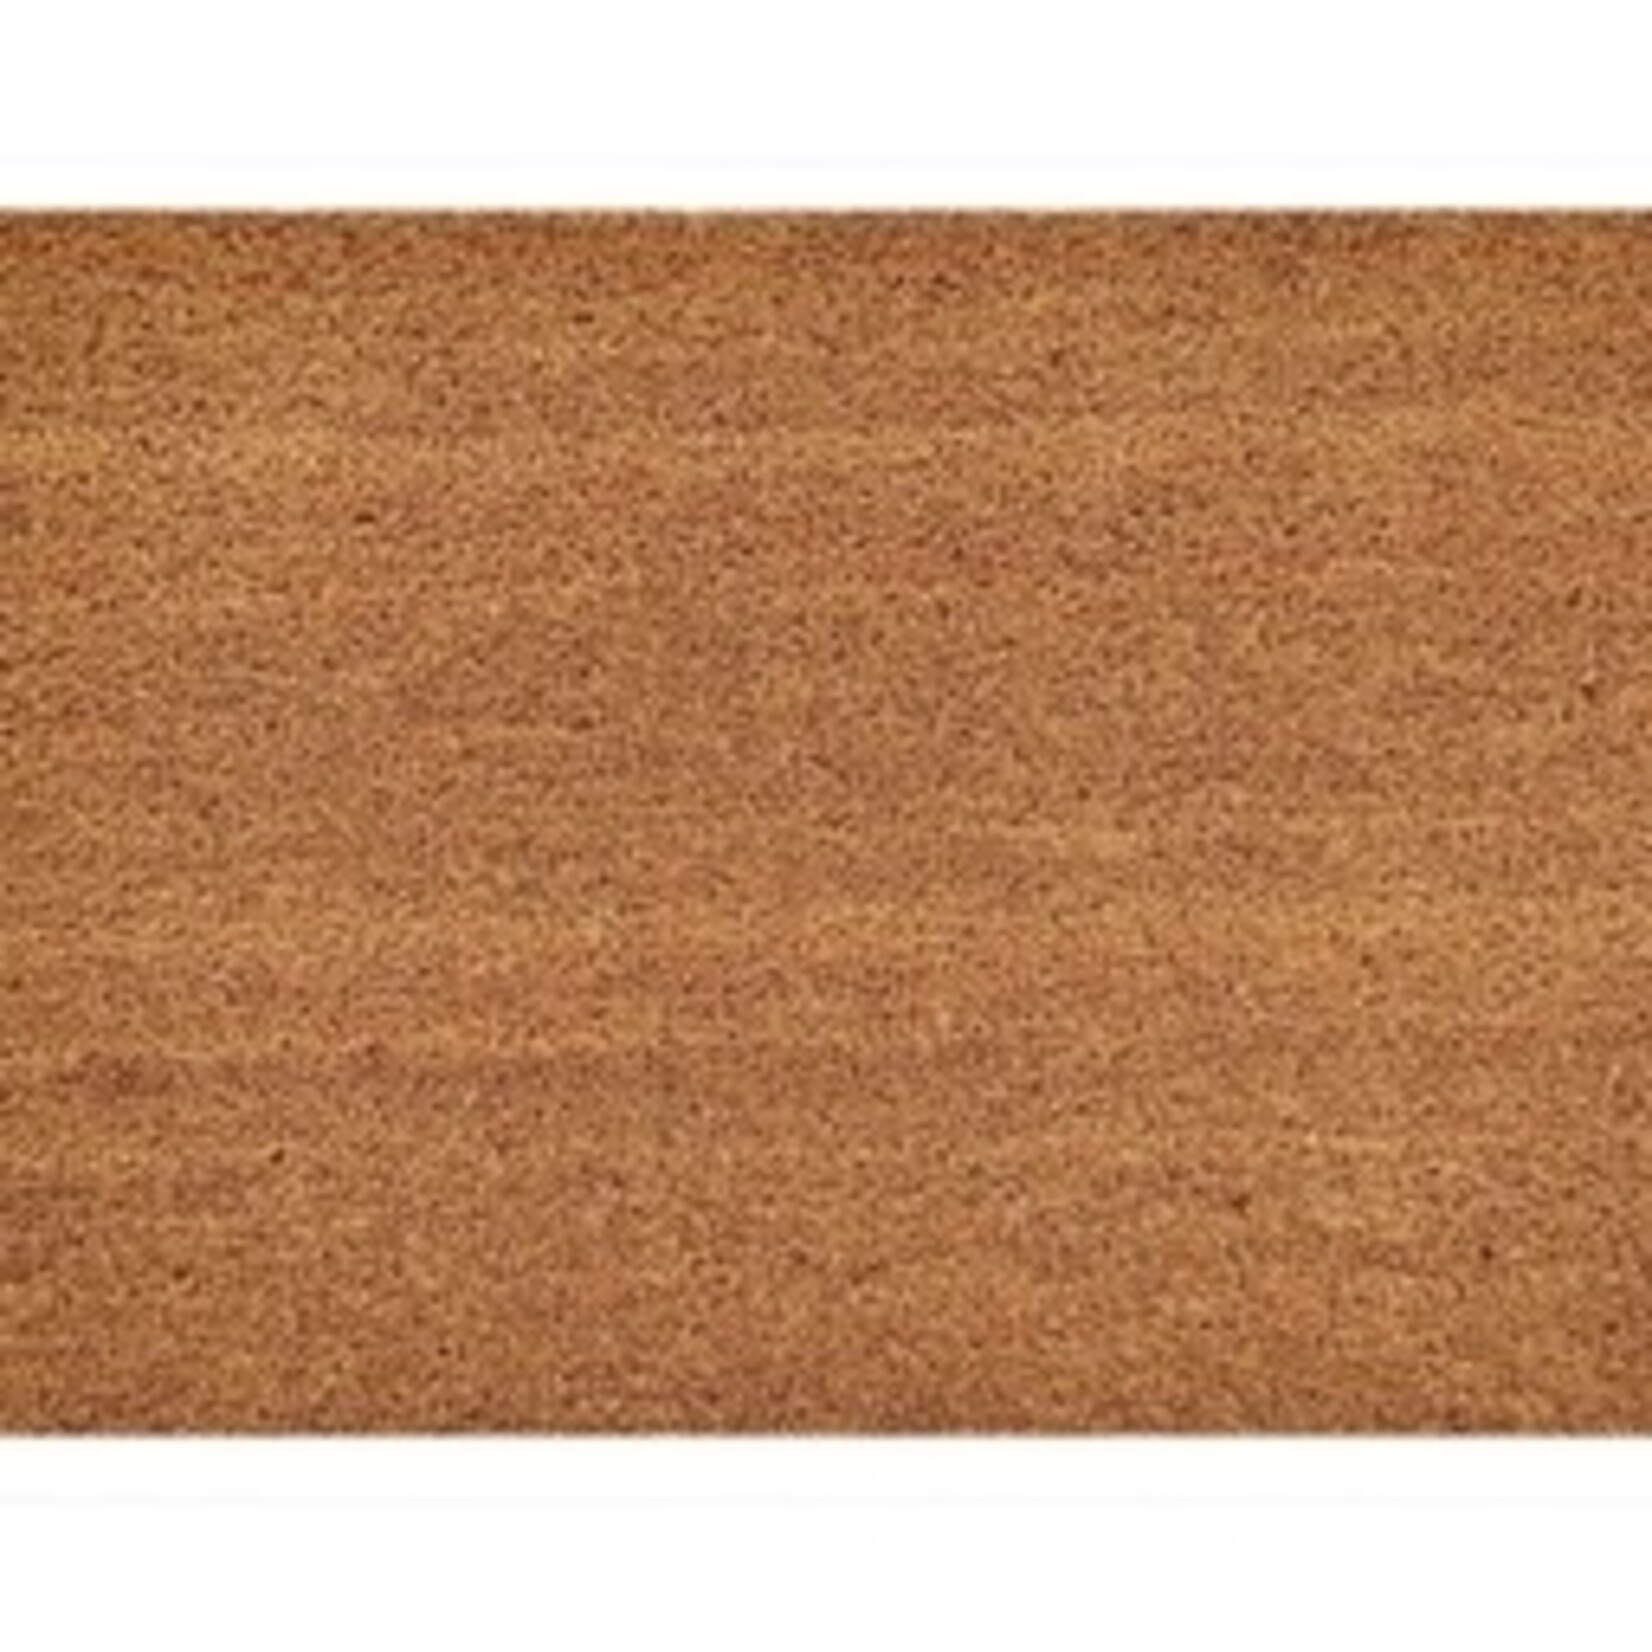 Parya Home -Doormat - Coconut mat - Brown- 40 x 60cm